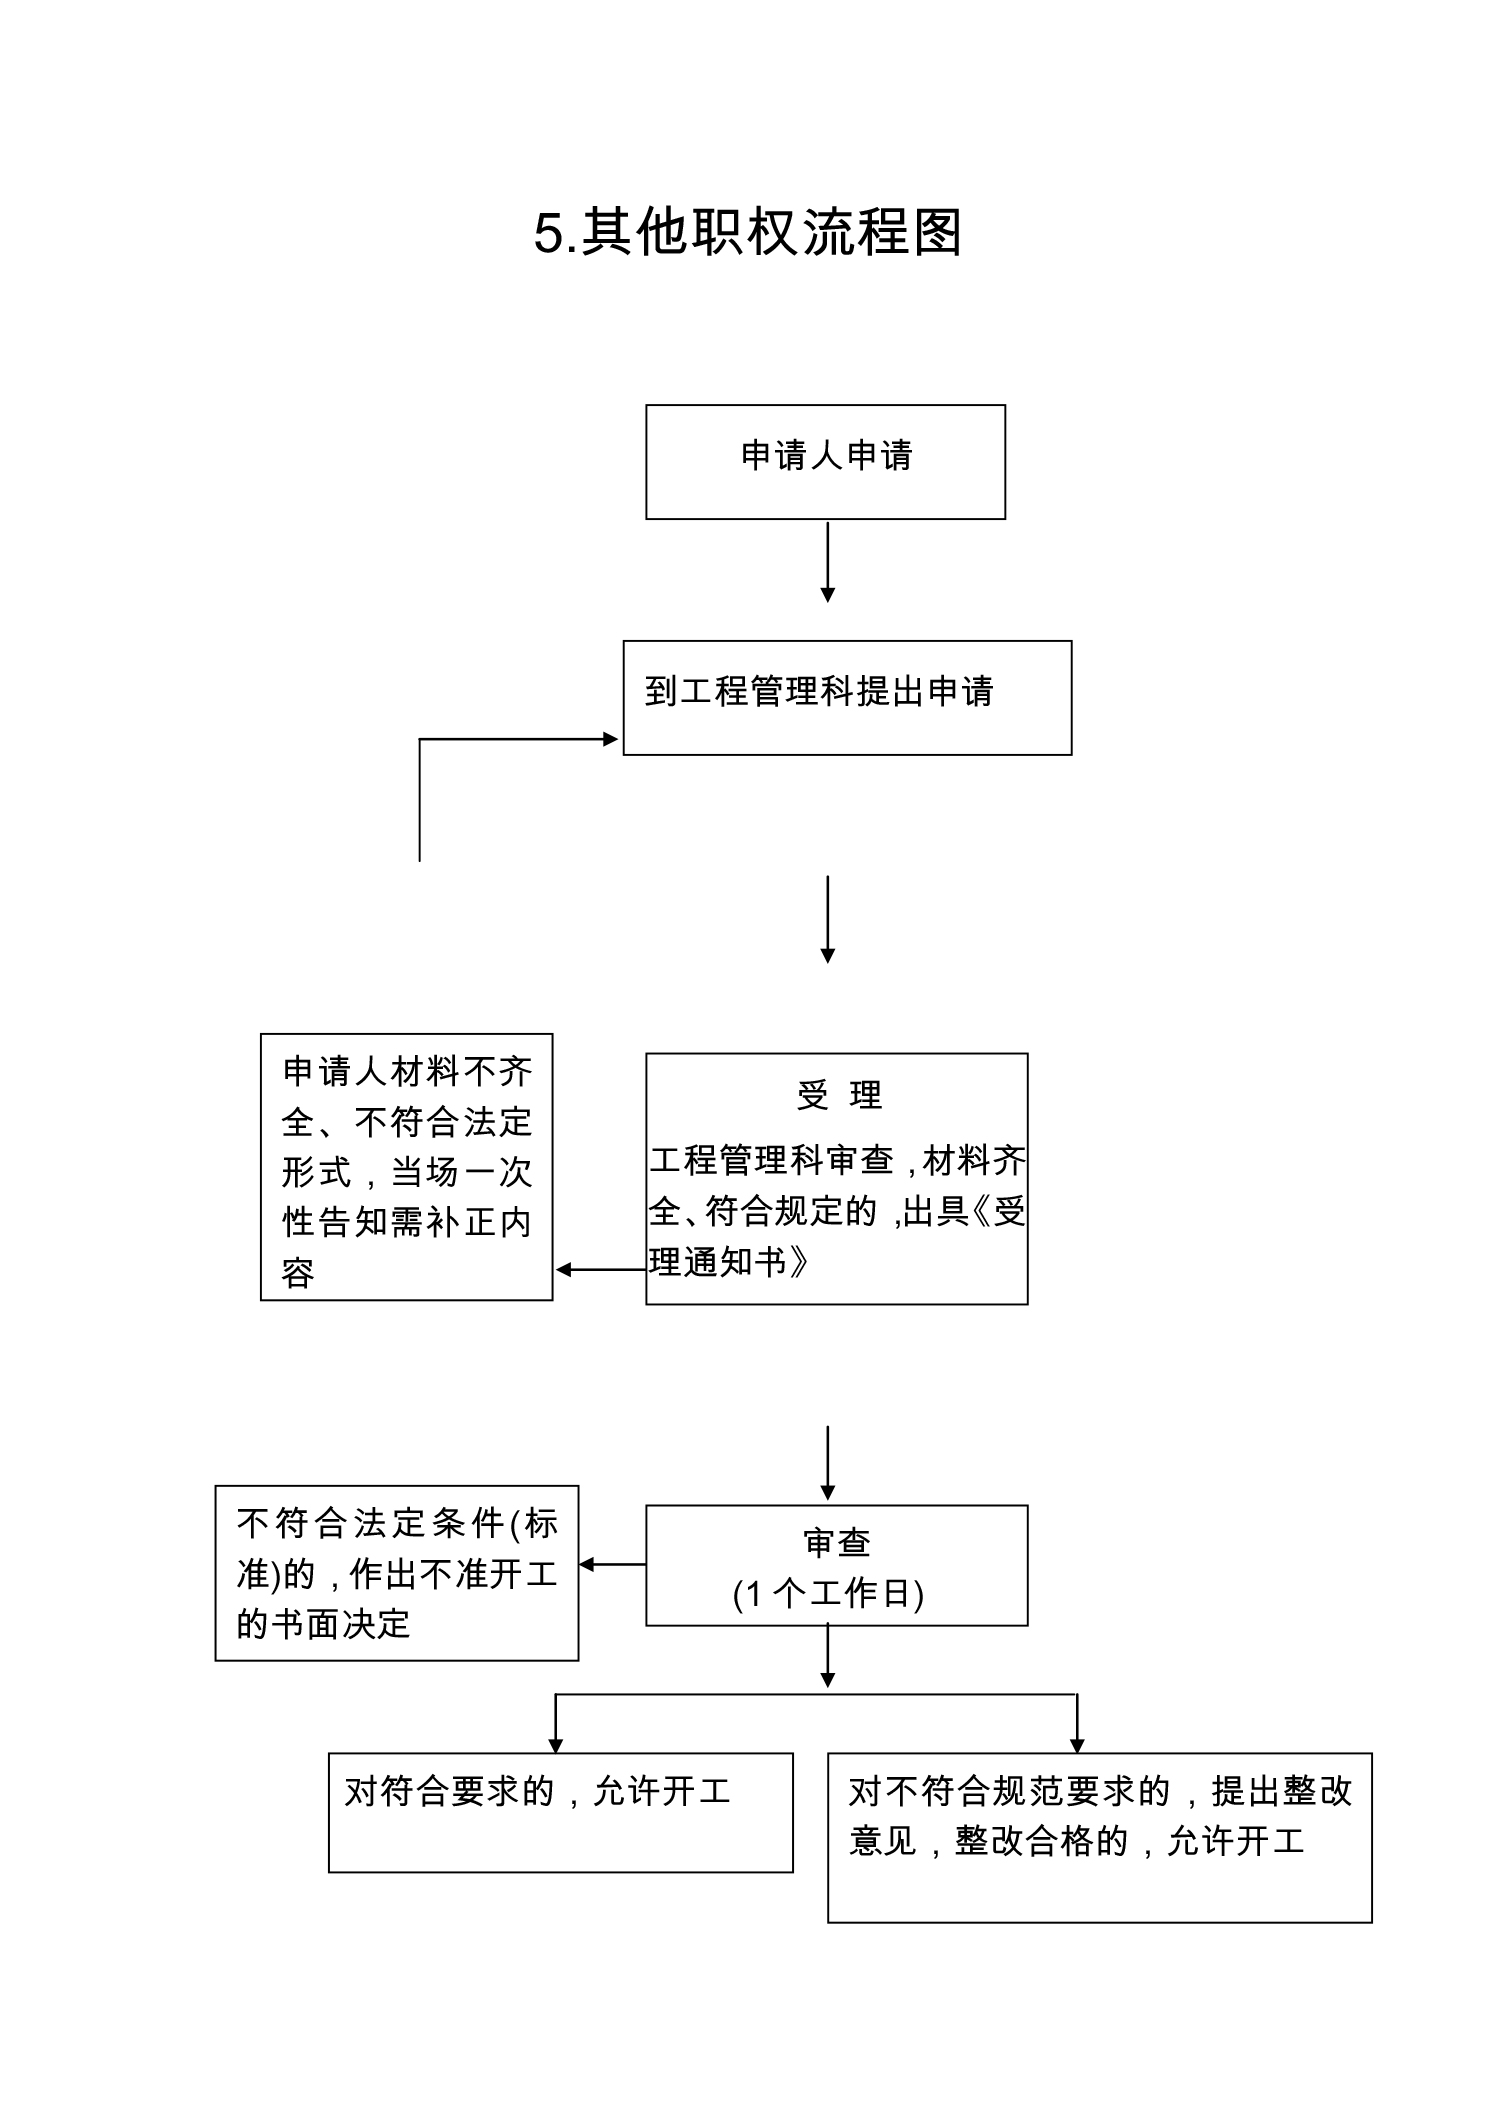 开封市人民防空办公室行政职权运行流程图-5.jpg